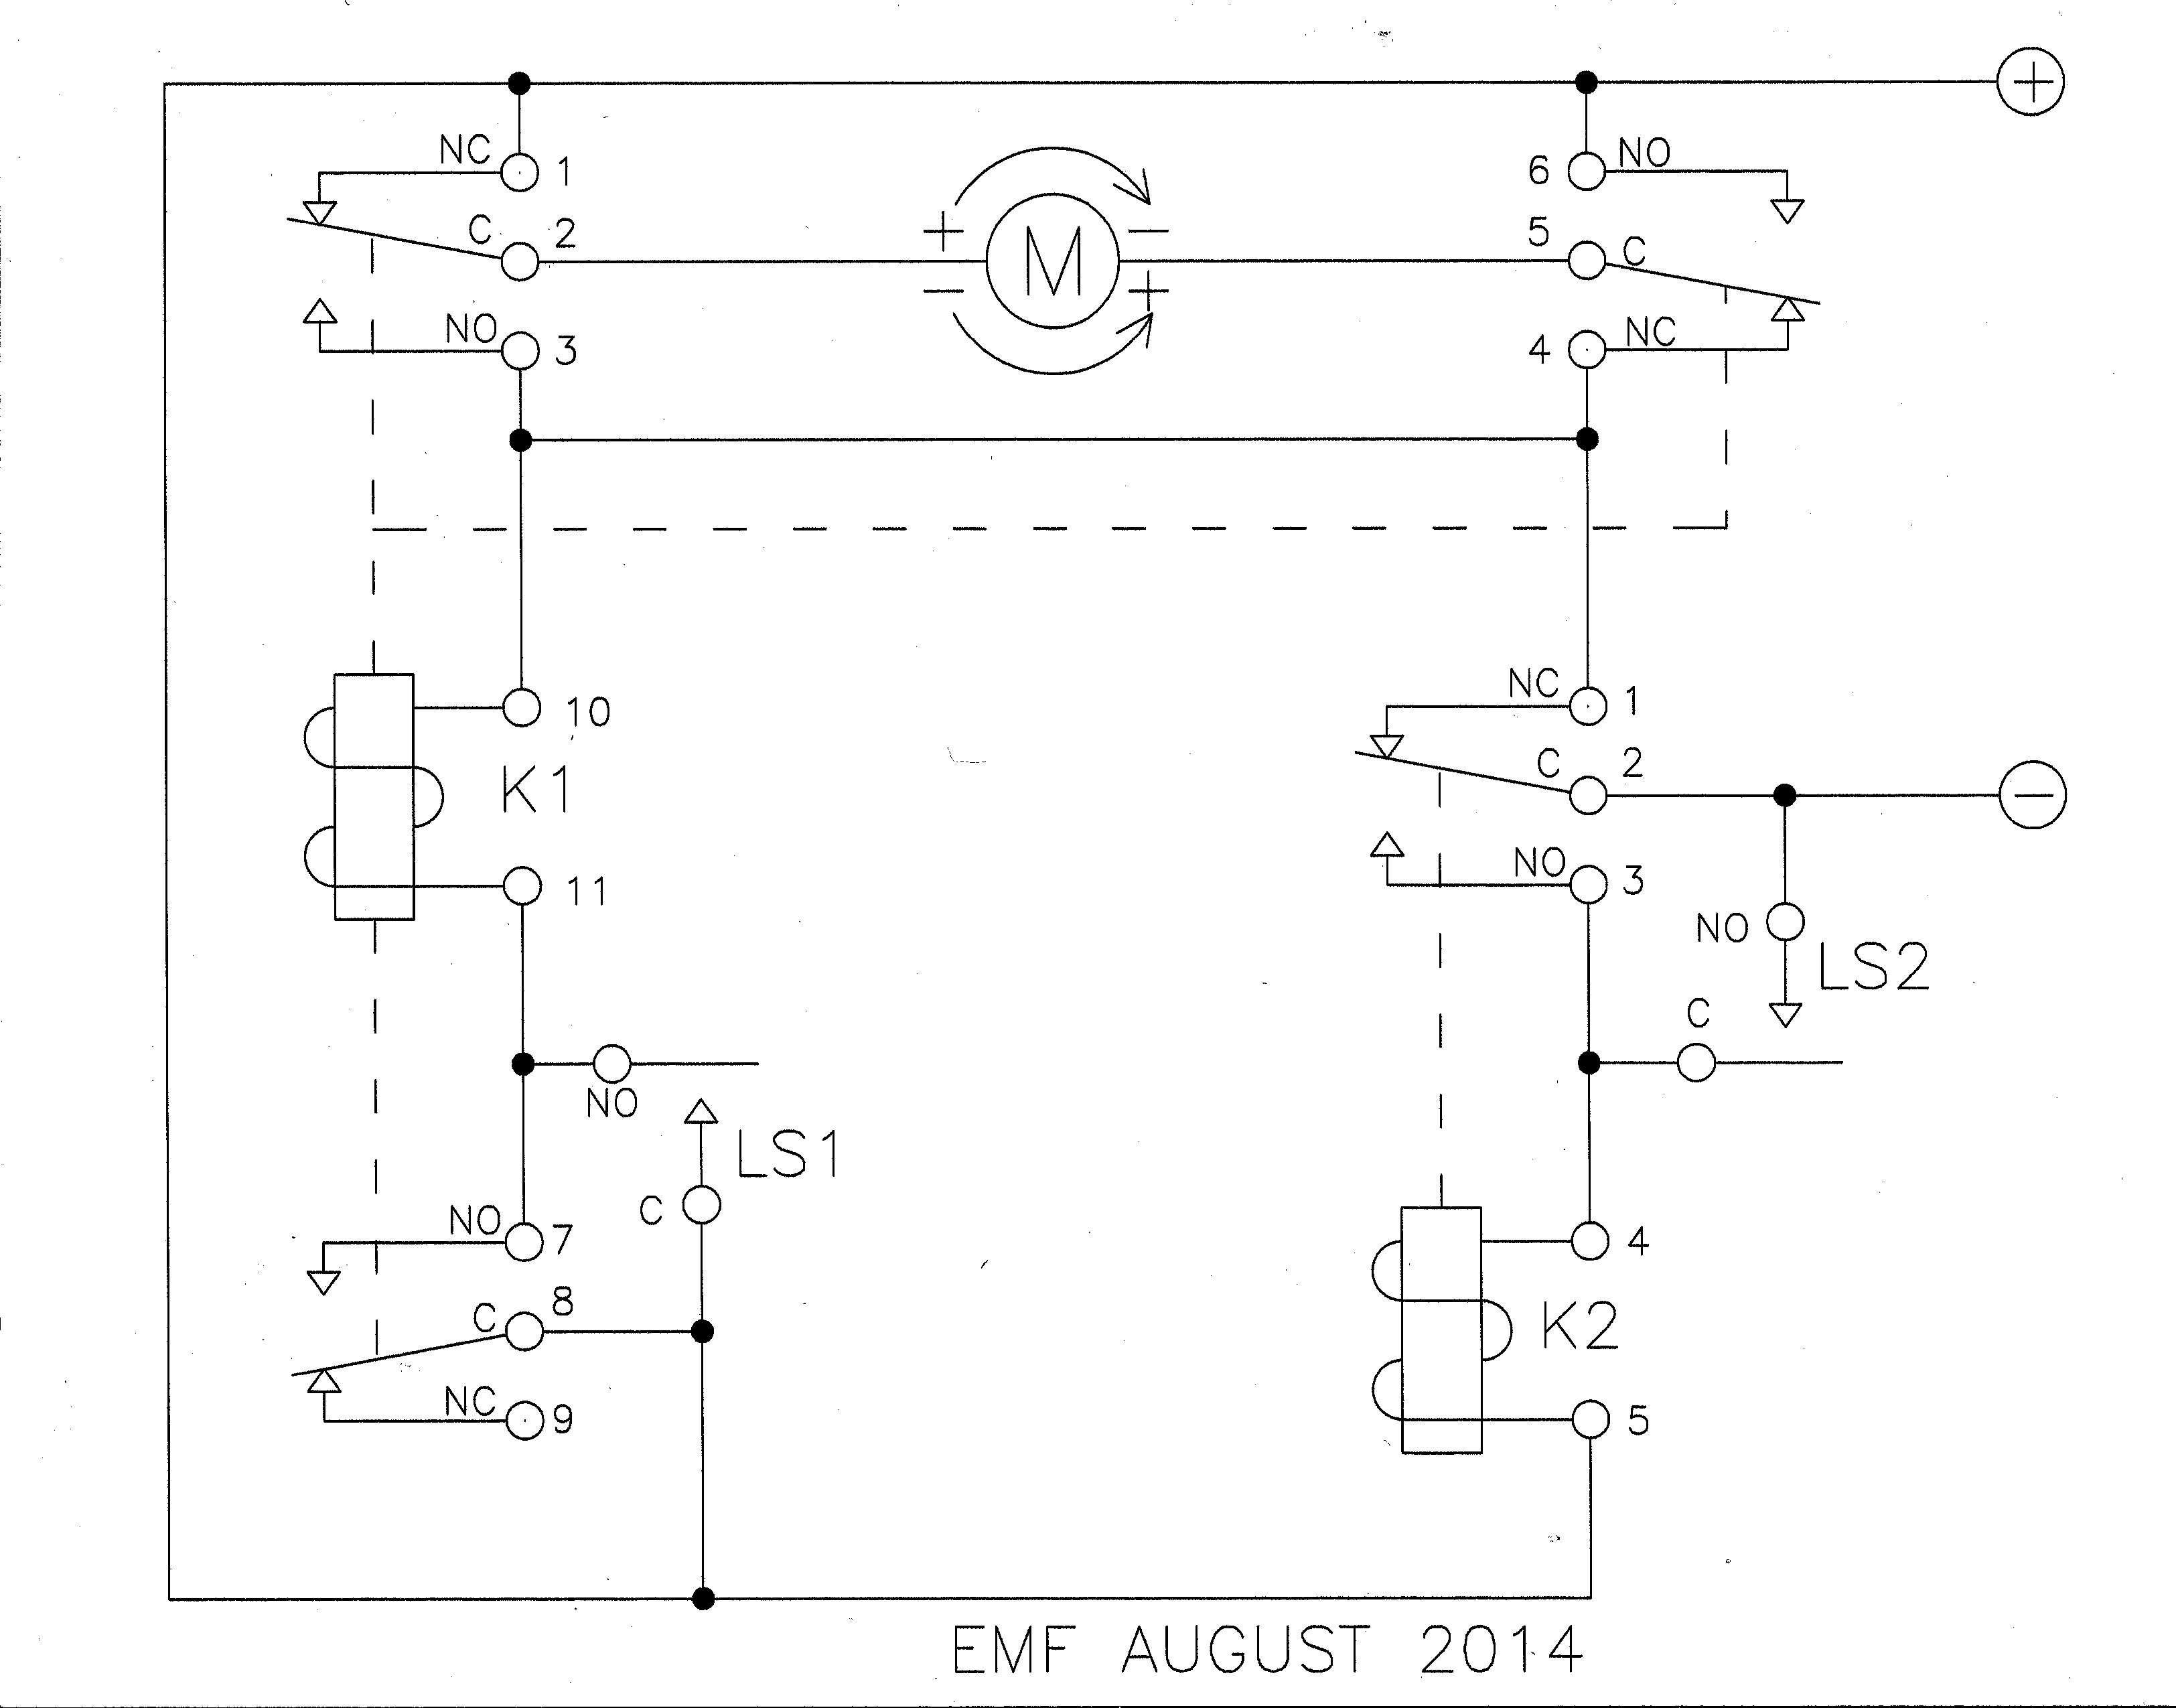 Ac Motor Reversing Switch Wiring Diagram | Wiring Diagram - Ac Motor Reversing Switch Wiring Diagram